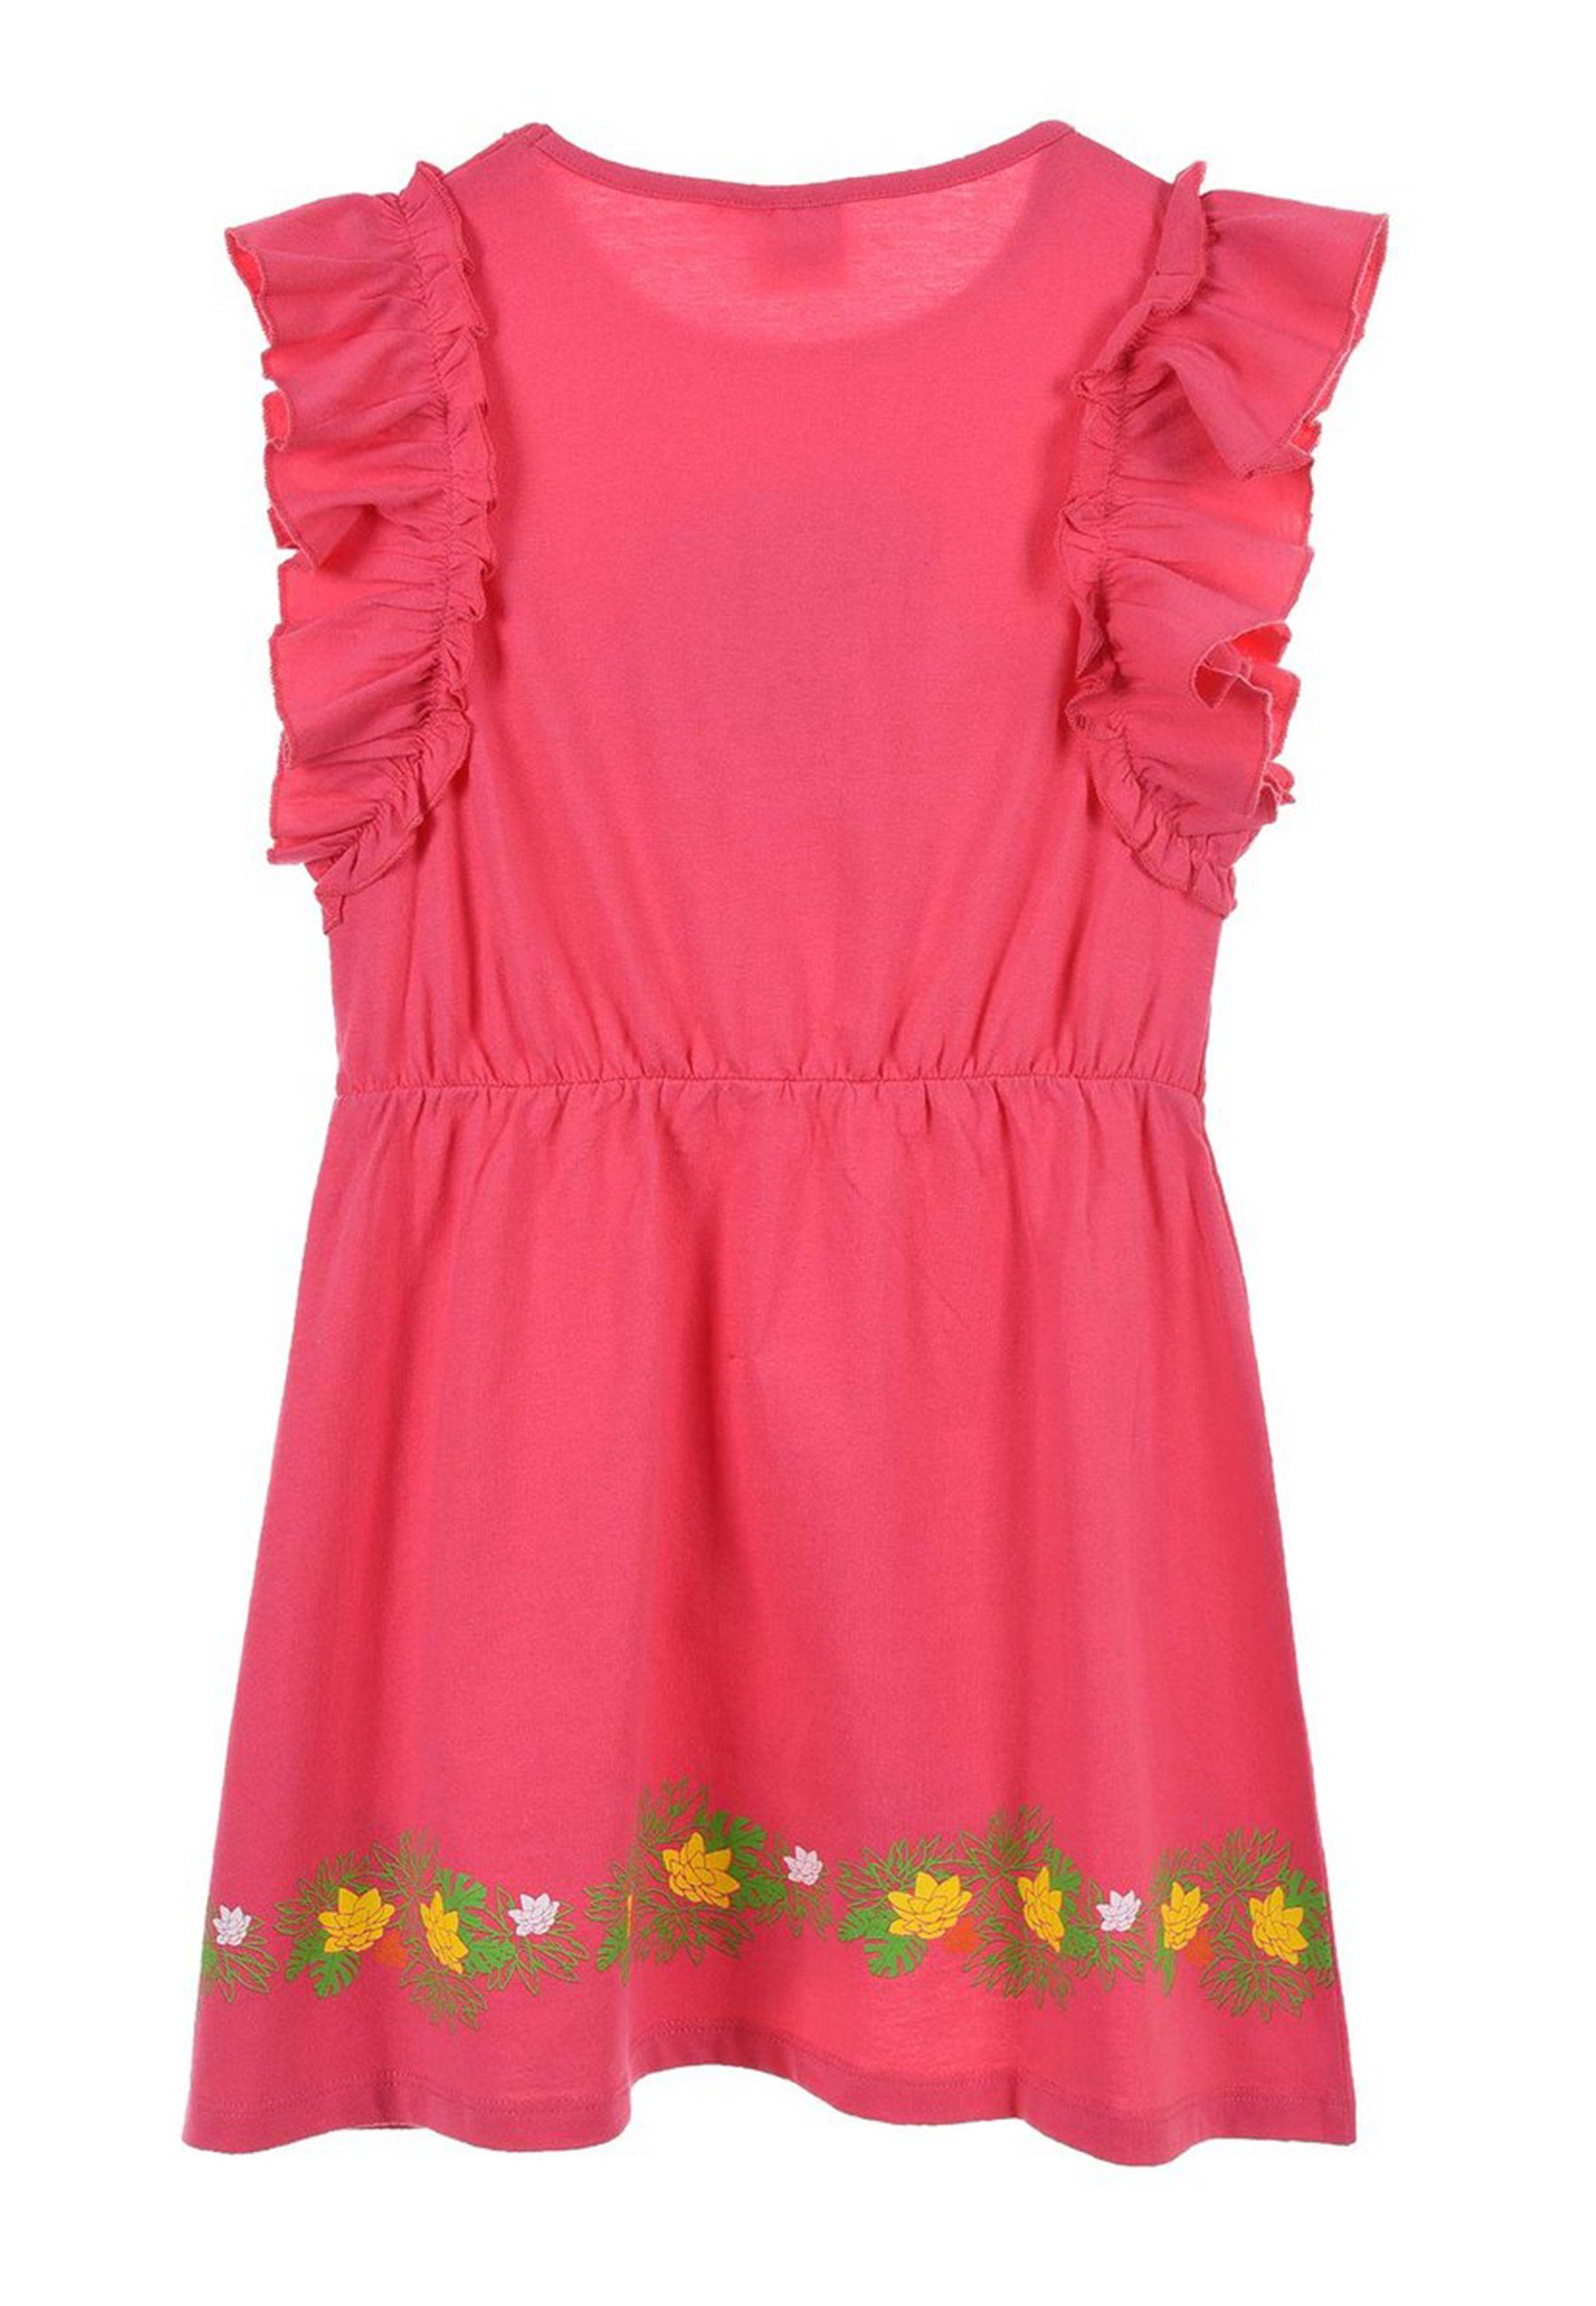 L.O.L. SURPRISE! A-Linien-Kleid Mädchen Sommer-Kleid Tüll Kinder Pink Party-Kleid